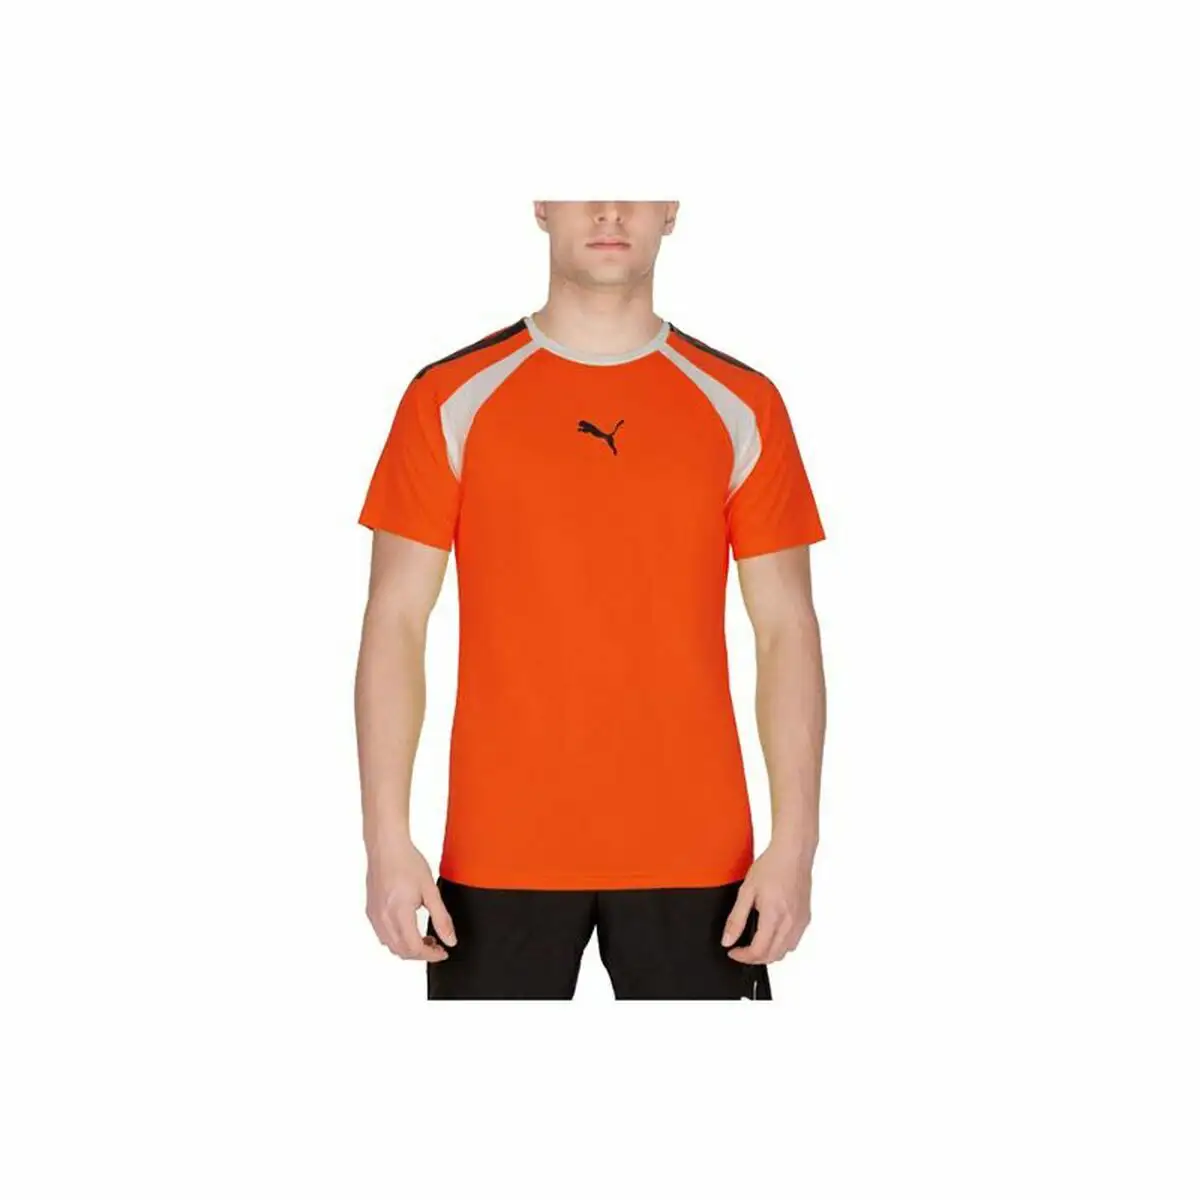 T shirt a manches courtes homme puma team liga padel orange_3453. DIAYTAR SENEGAL - Là où Chaque Clic Compte. Parcourez notre boutique en ligne et laissez-vous guider vers des trouvailles uniques qui enrichiront votre quotidien.